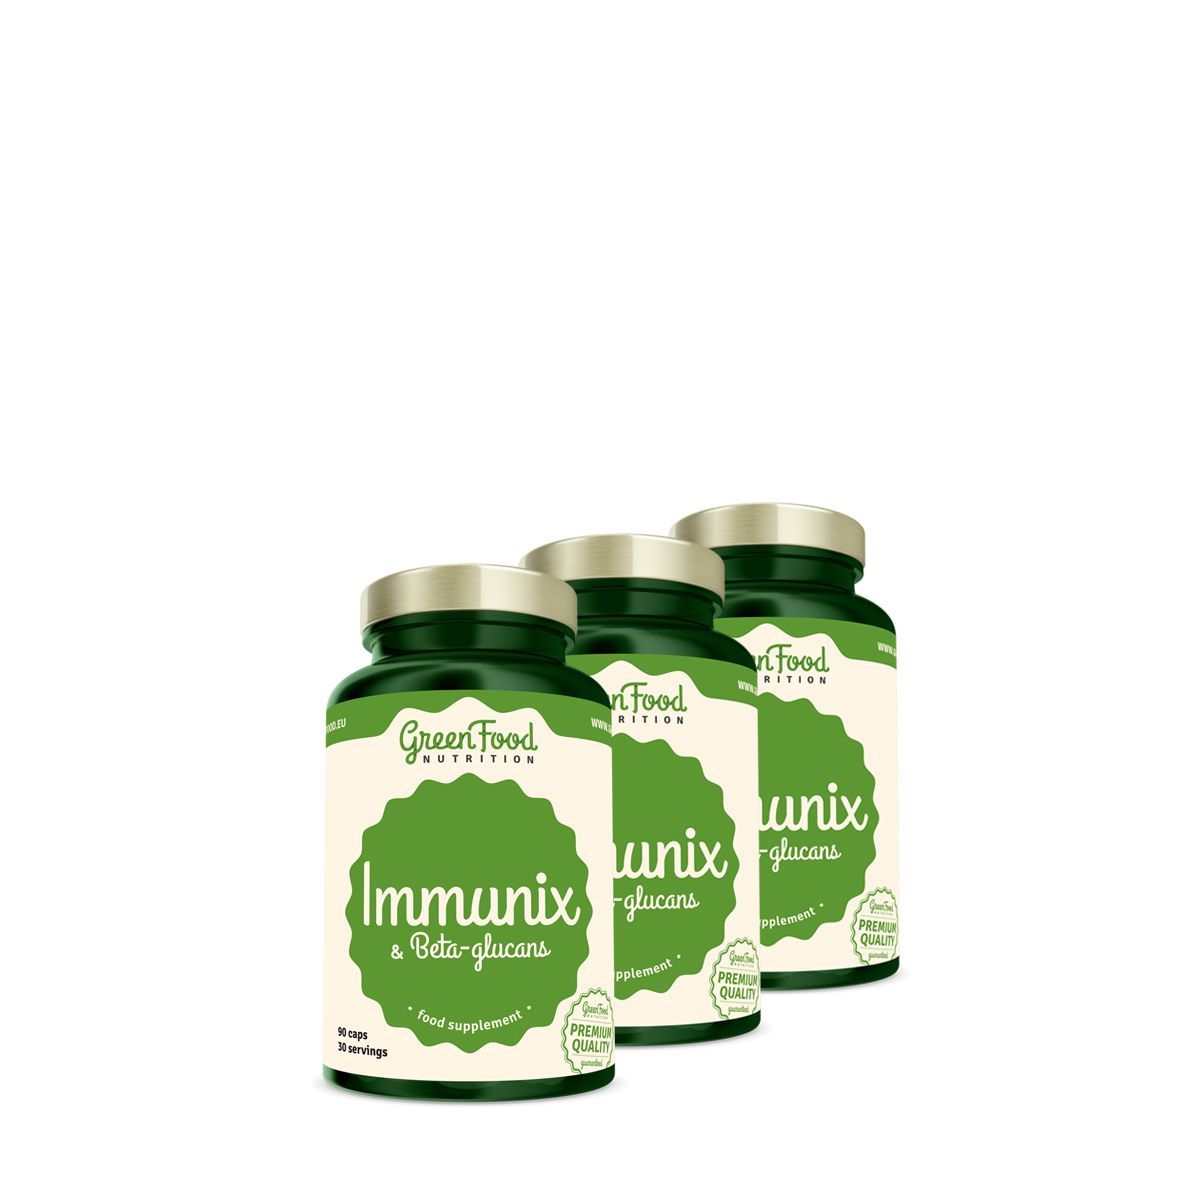 Immunerősítő béta-glükánnal, GreenFood Nutrition Immunix & Beta-Glucans, 3x90 kapszula